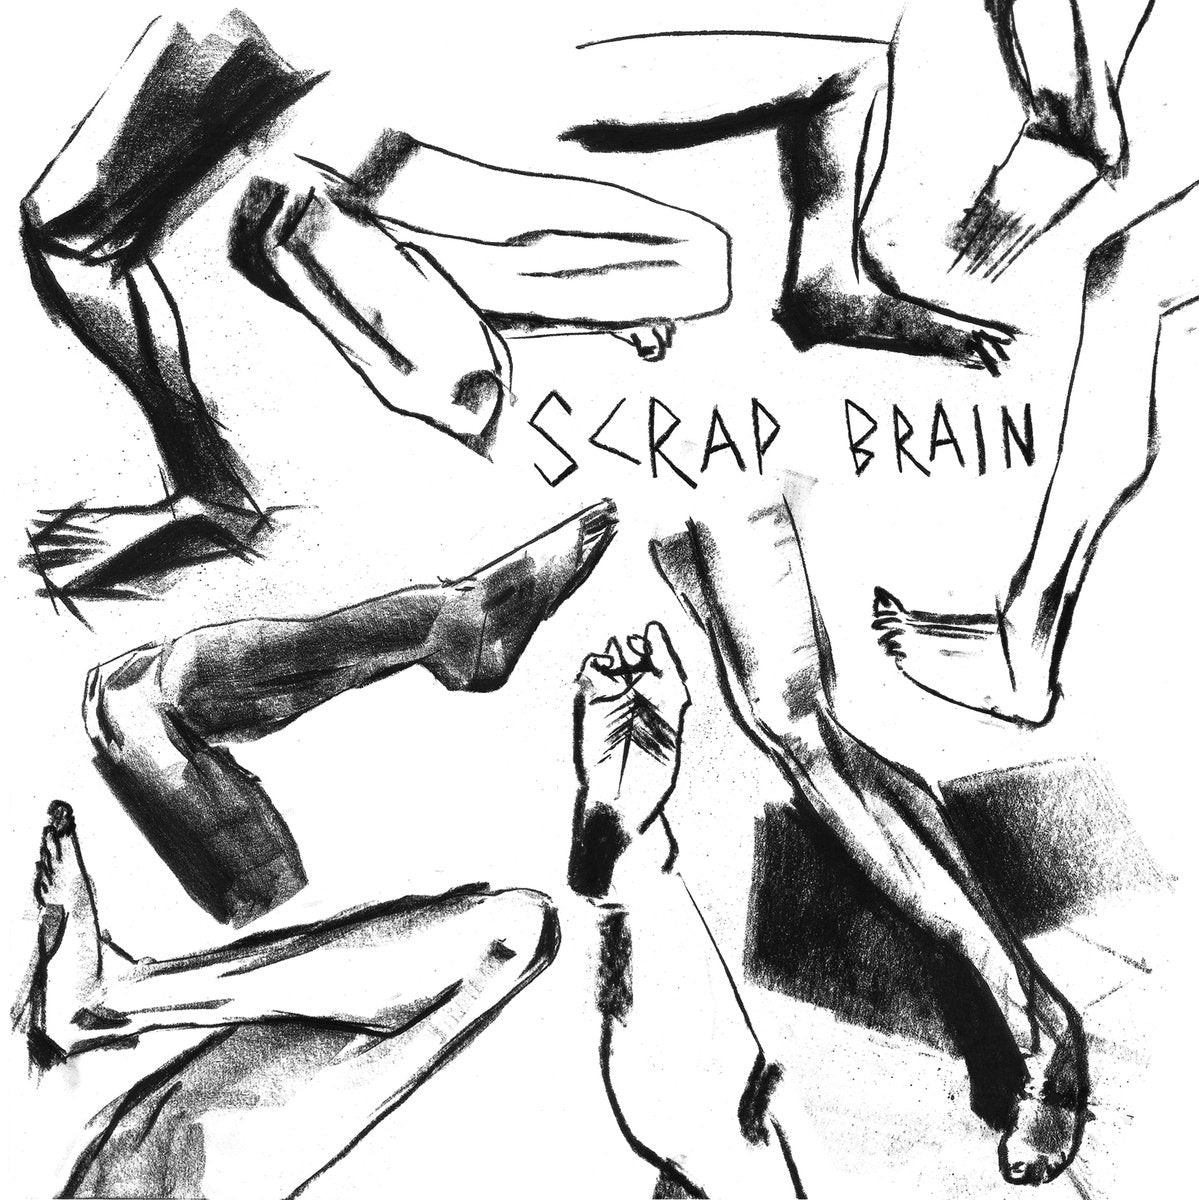 Scrap Brain - s/t 7" - Vinyl - Thrilling Living